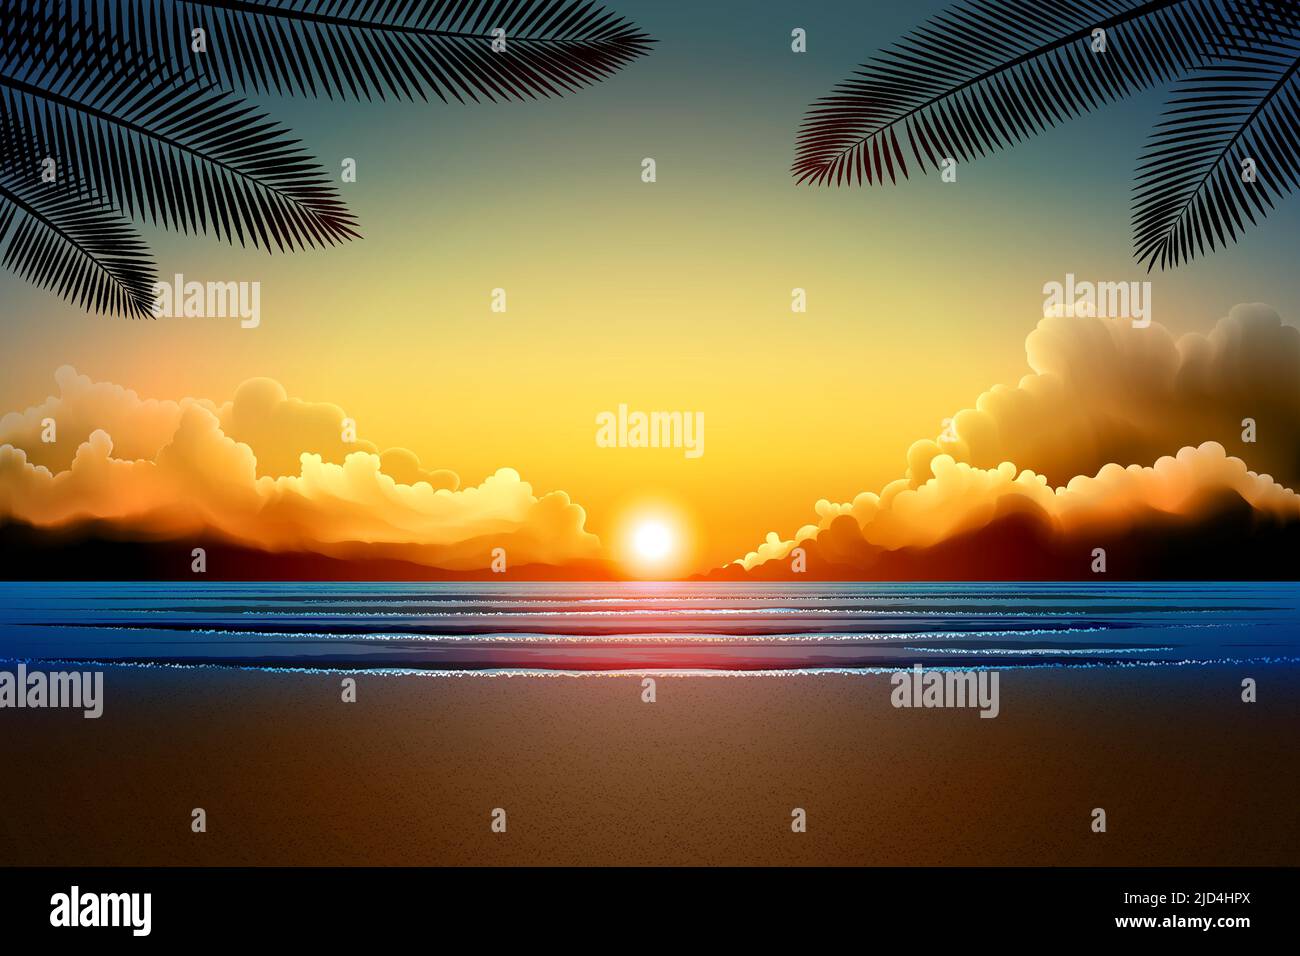 cielo e nuvola colorati con uno sfondo di alba sulla spiaggia e una silhouette di una foglia di cocco Illustrazione Vettoriale